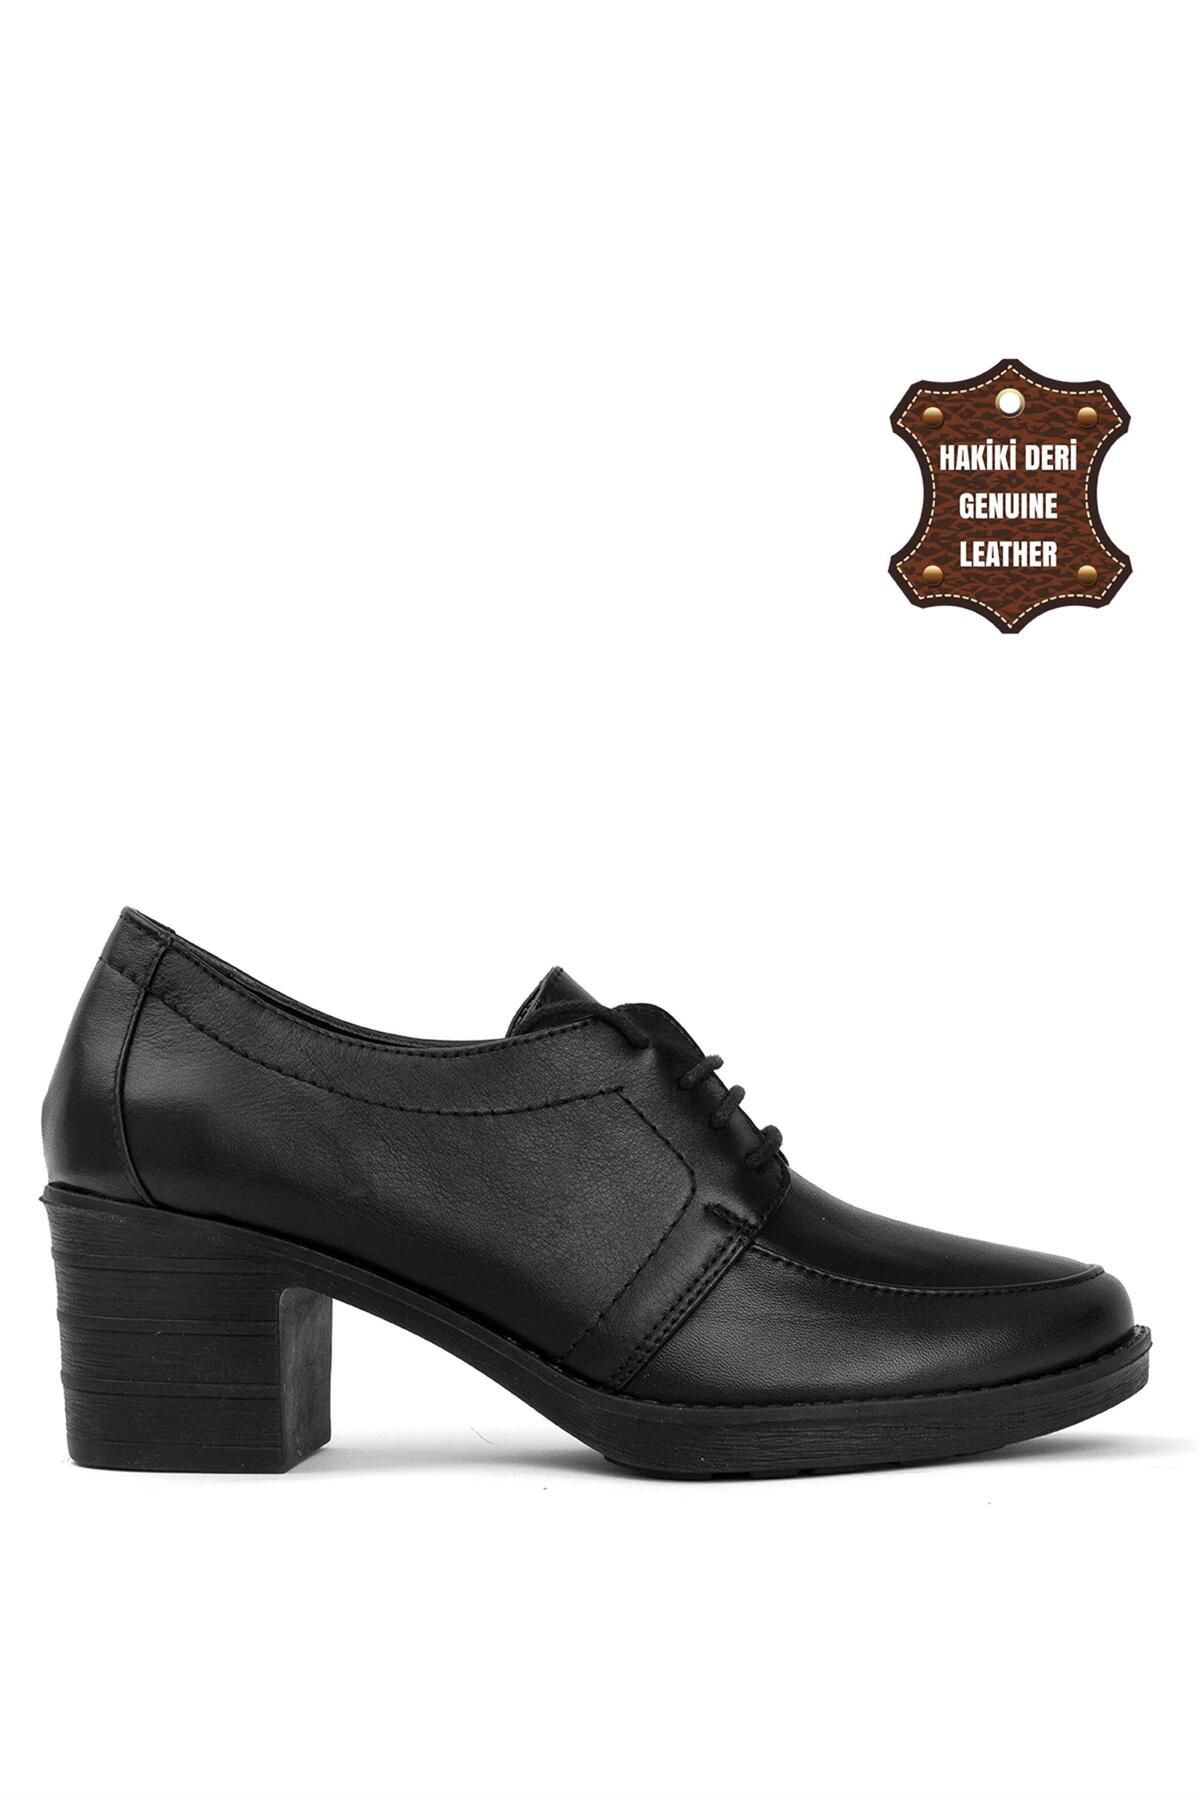 ENZO 8501 Kadın Klasik Topuklu Ayakkabı Siyah